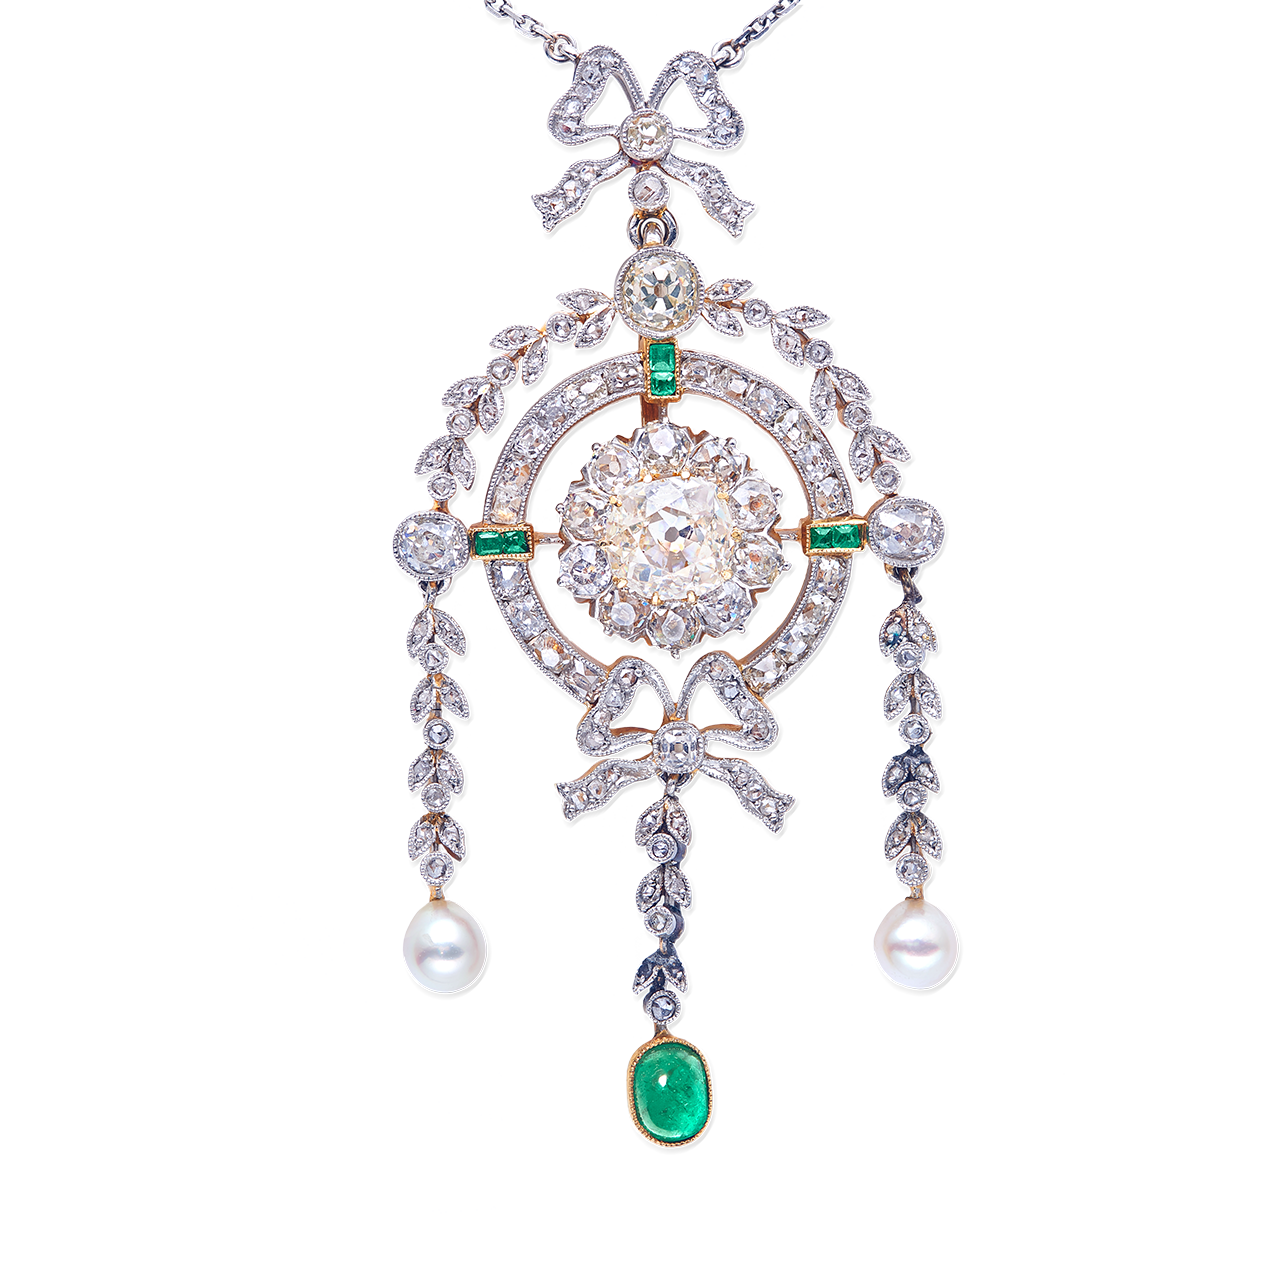 1905 老礦式切工古董鑽石墜鍊 2克拉
Antique Old- Mine Cushion Cut
Diamond Pendant Necklace